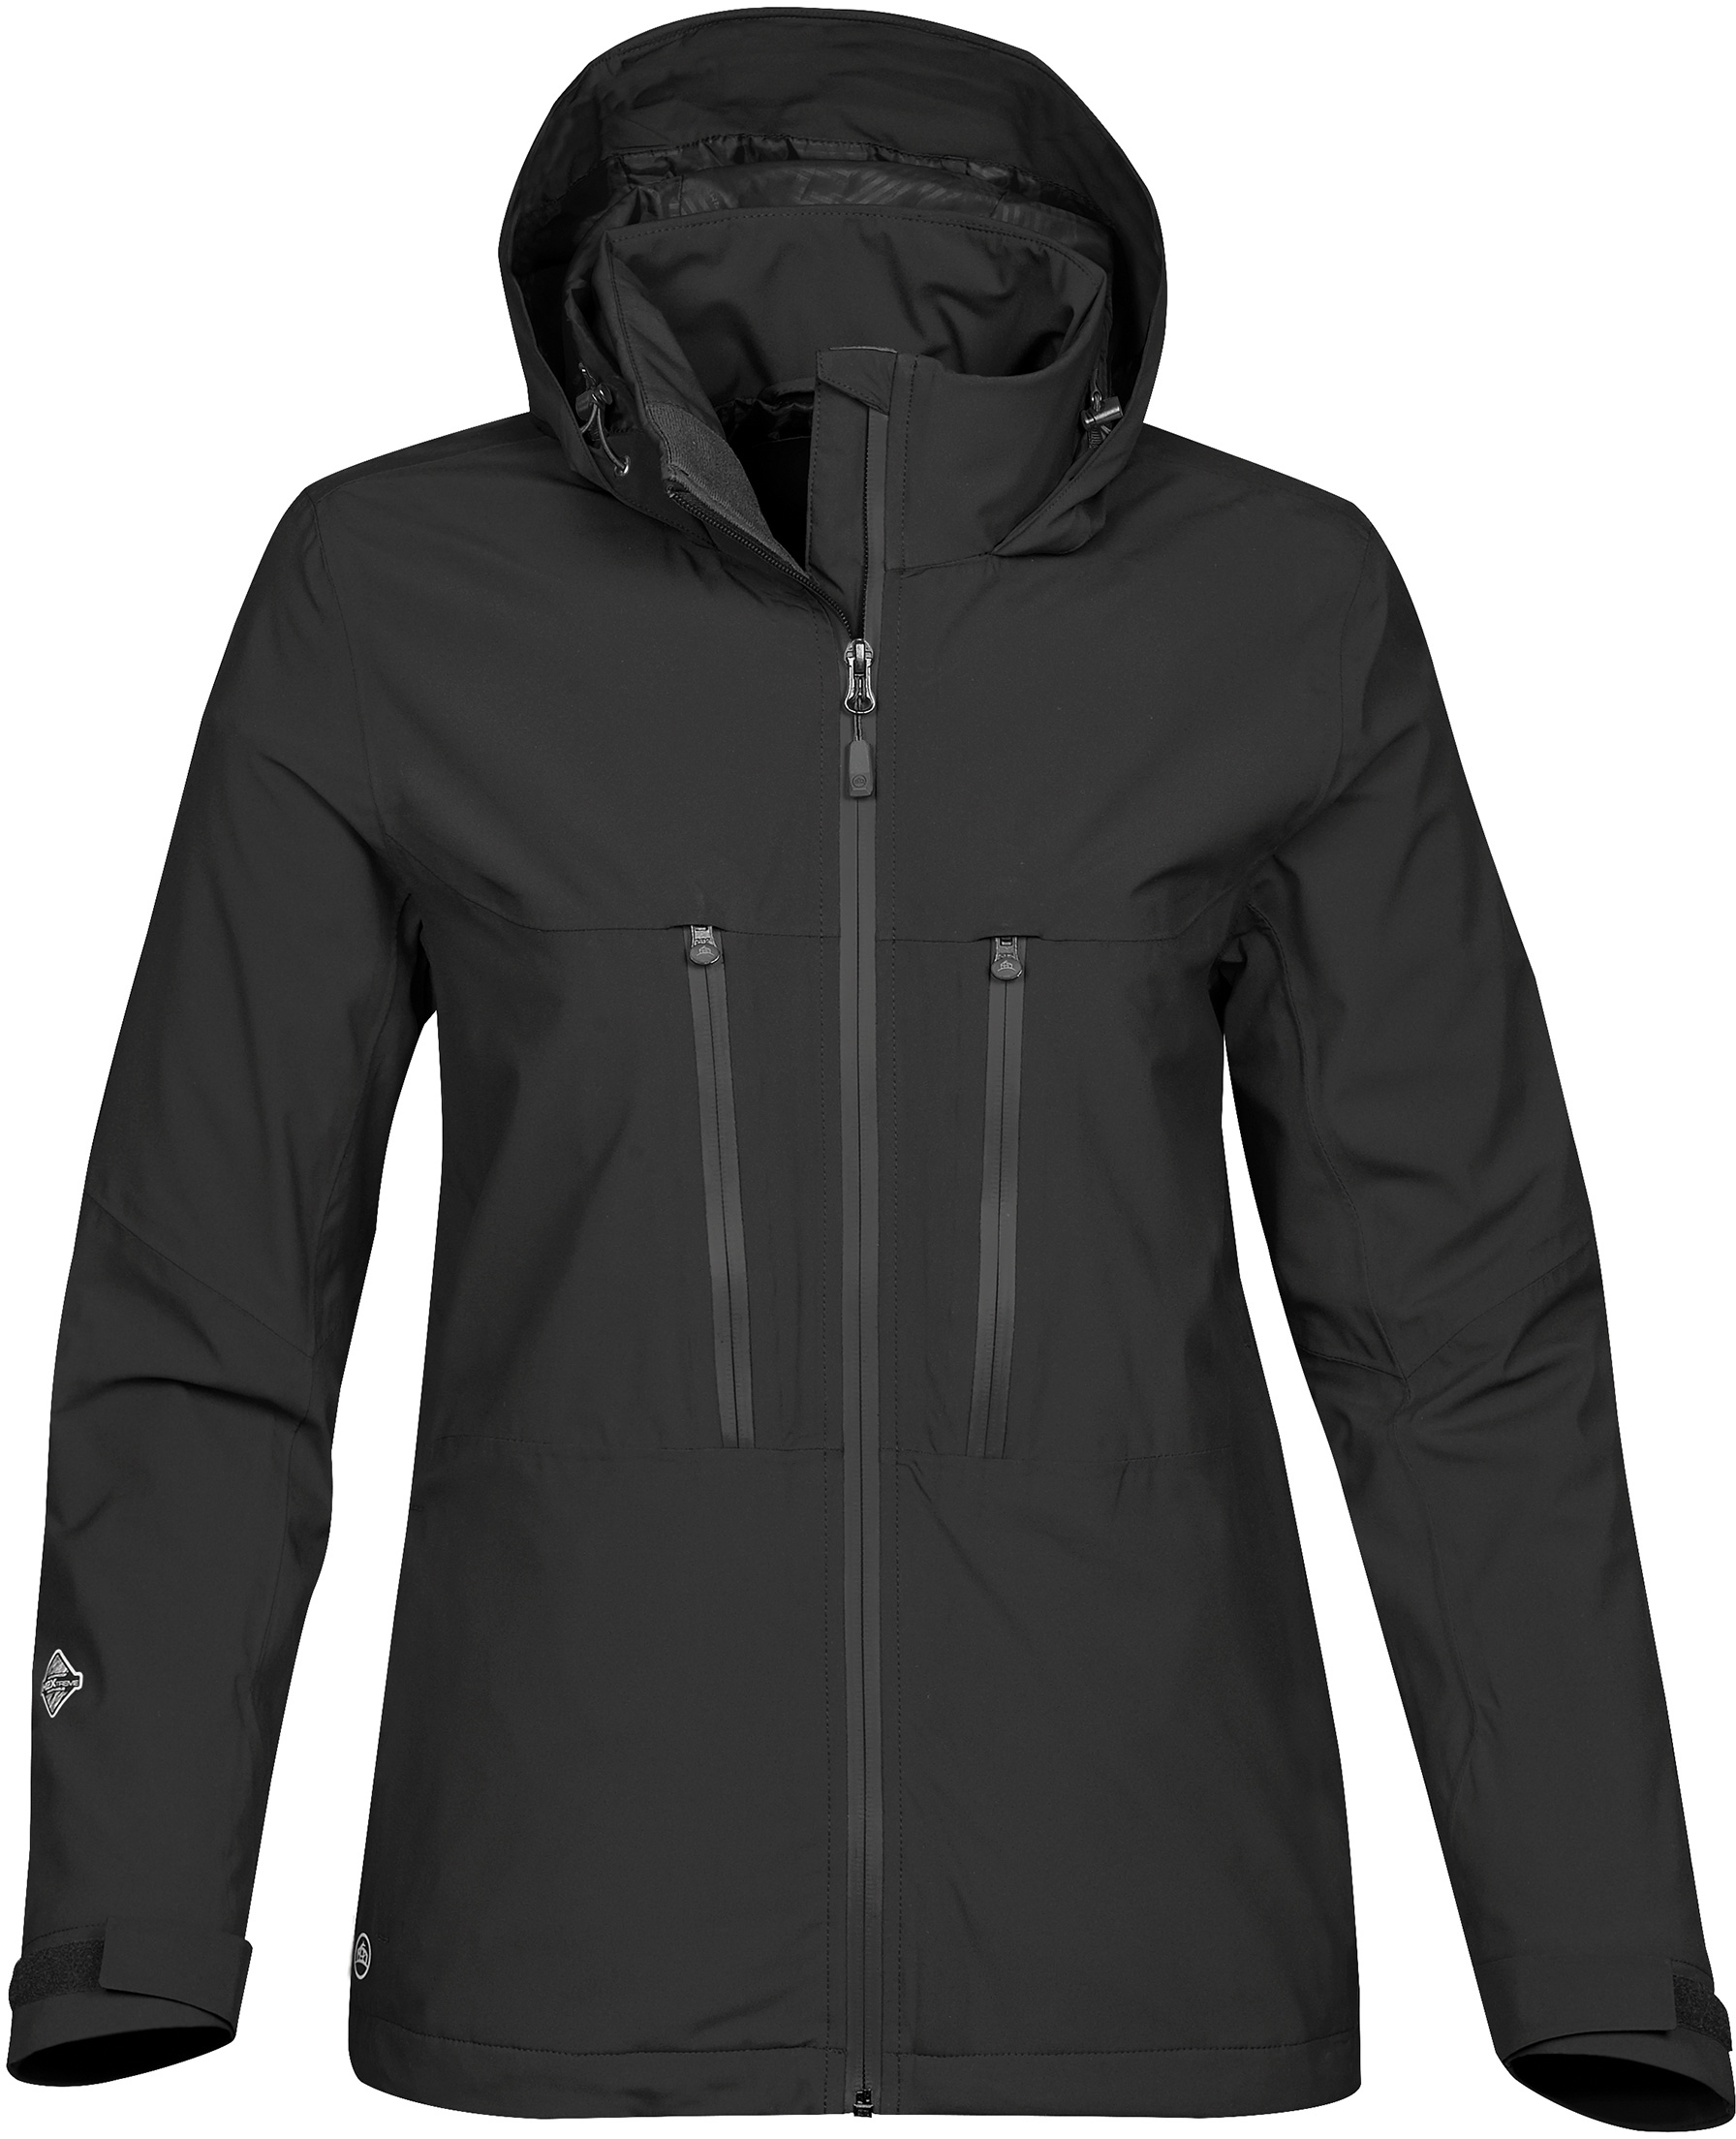 Stormtech HRX-1W - Women's Hurricane Shell Jacket $105.00 - Outerwear